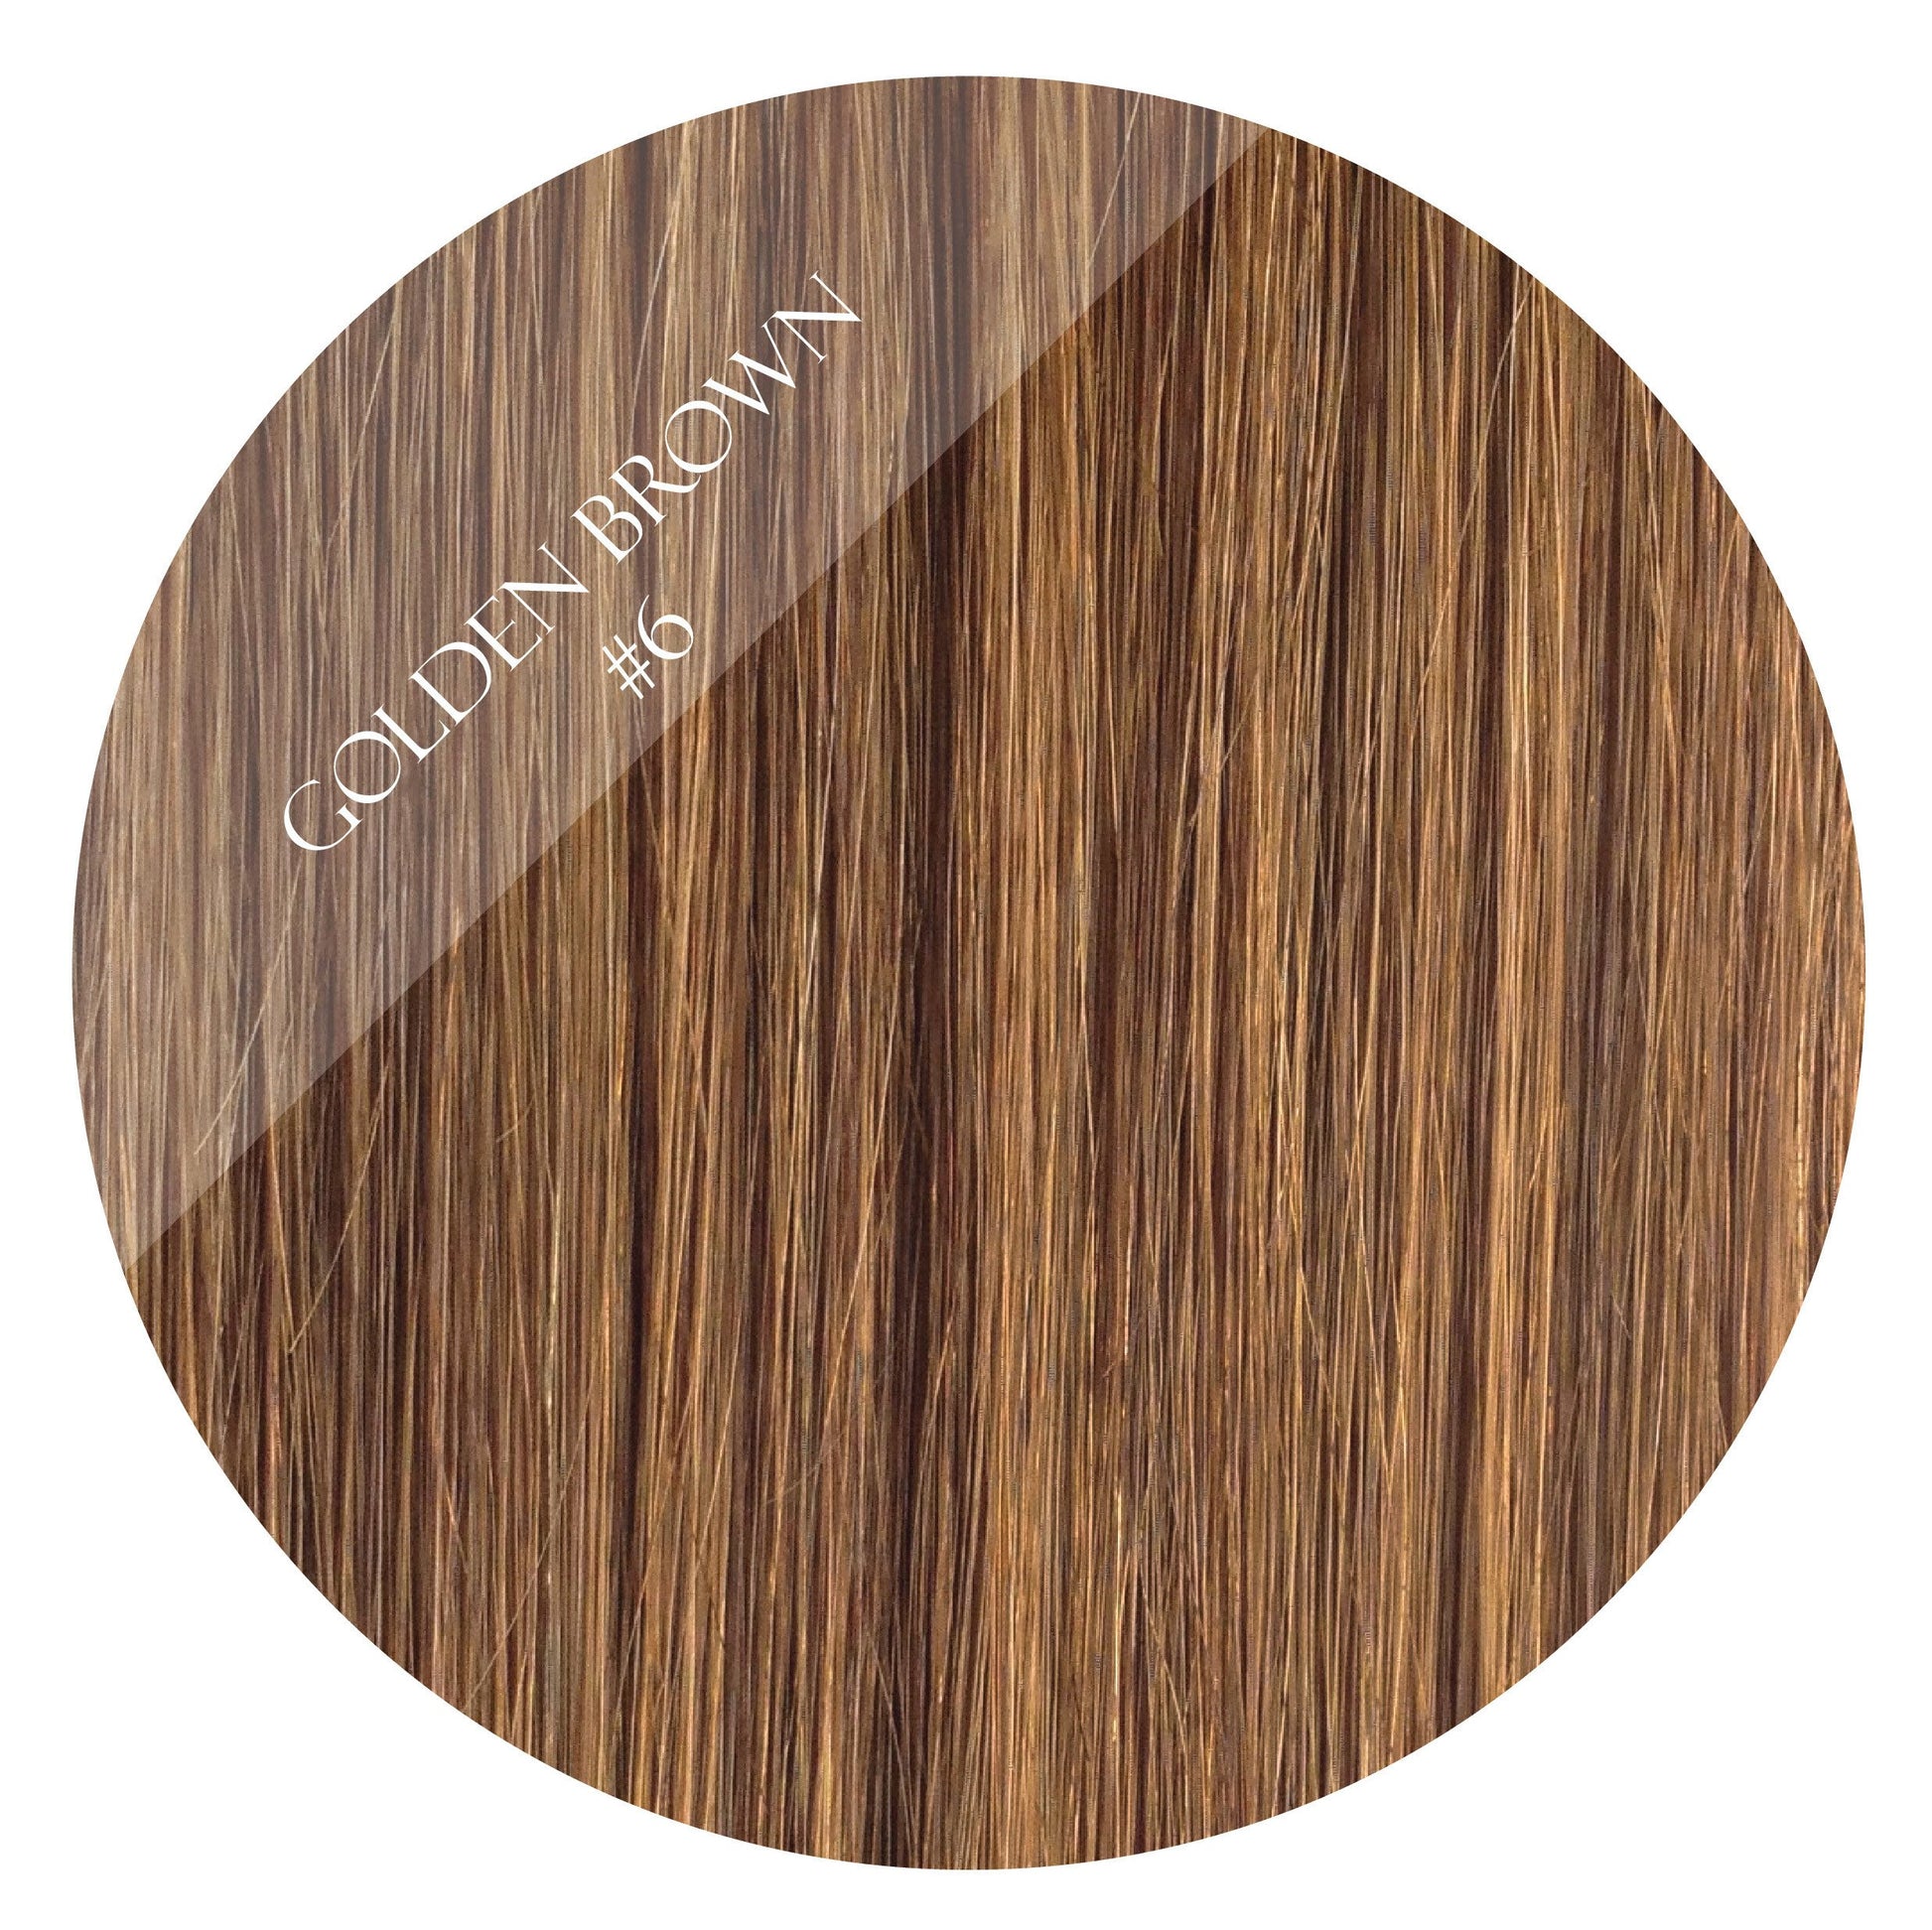 golden brown #6 weft hair extensions 26inch deluxe